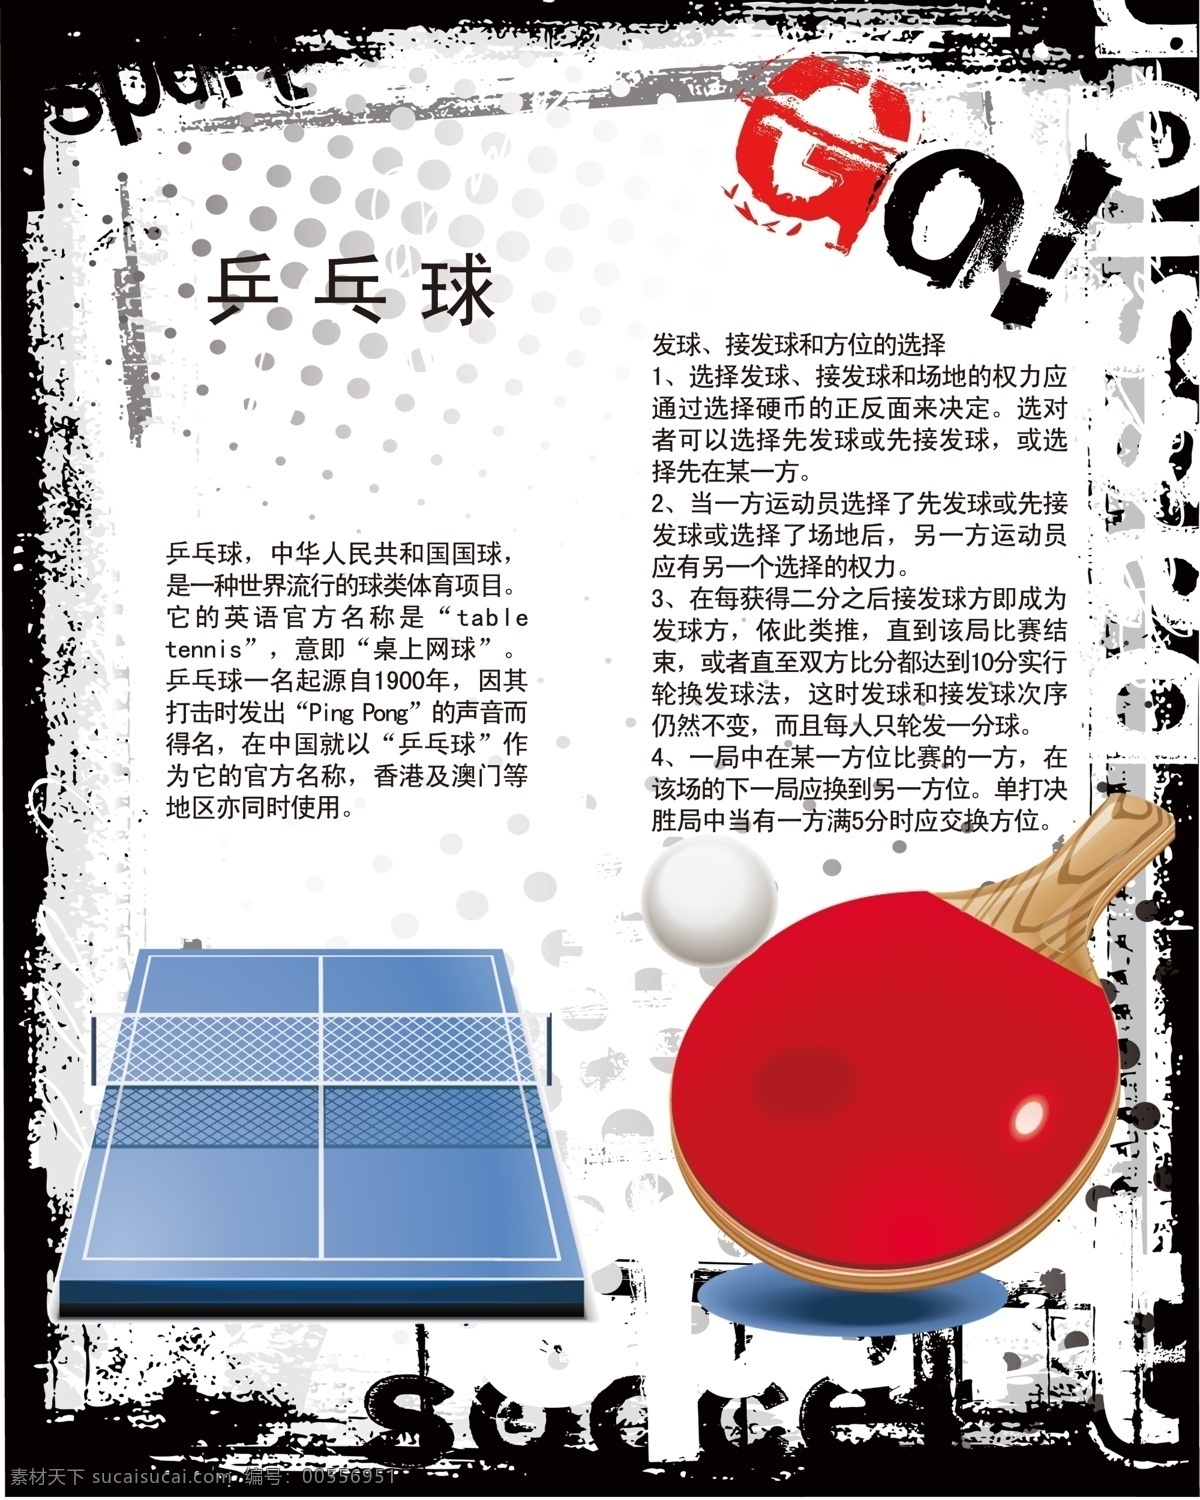 200 常识 广告设计模板 健身 介绍 乒乓球 人物 展板 运动 体育 舞蹈 乒乓球台 乒乓球拍 展板模板 源文件 psd源文件